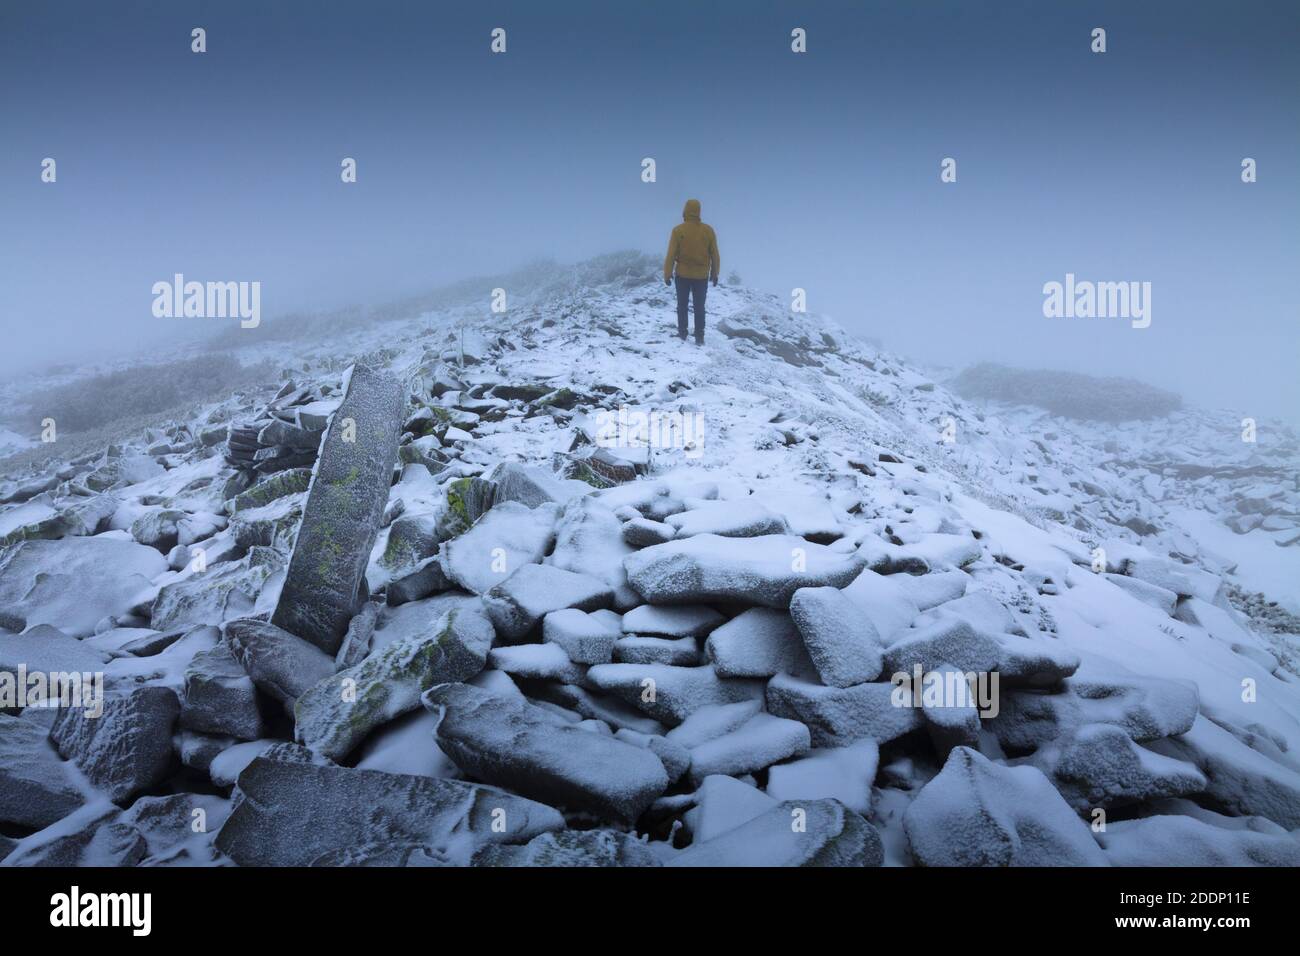 Ein einsamer Wanderer in einer verschneiten Landschaft. Einsamkeit, Berge, Winter, Nebel, Schnee. Stockfoto